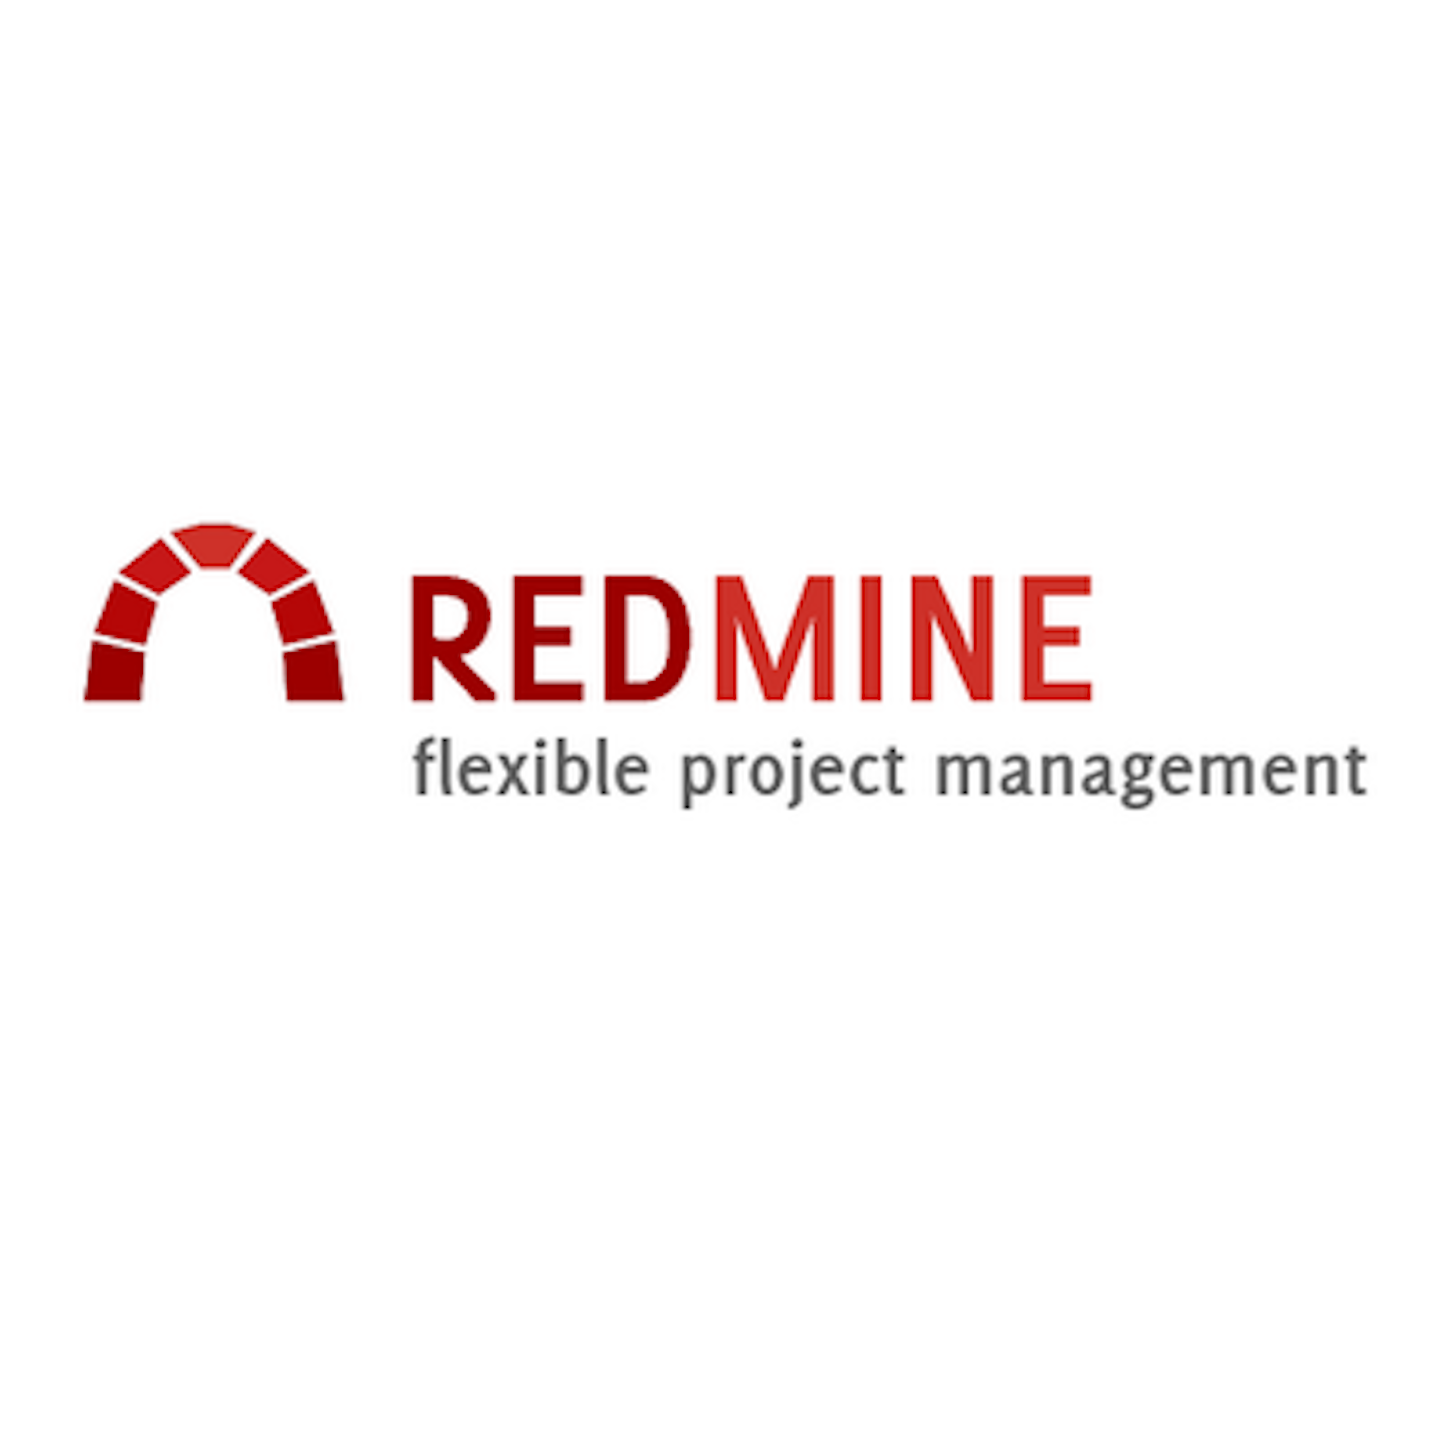 Redmine Reviews - Pros & Cons, Ratings & more | GetApp